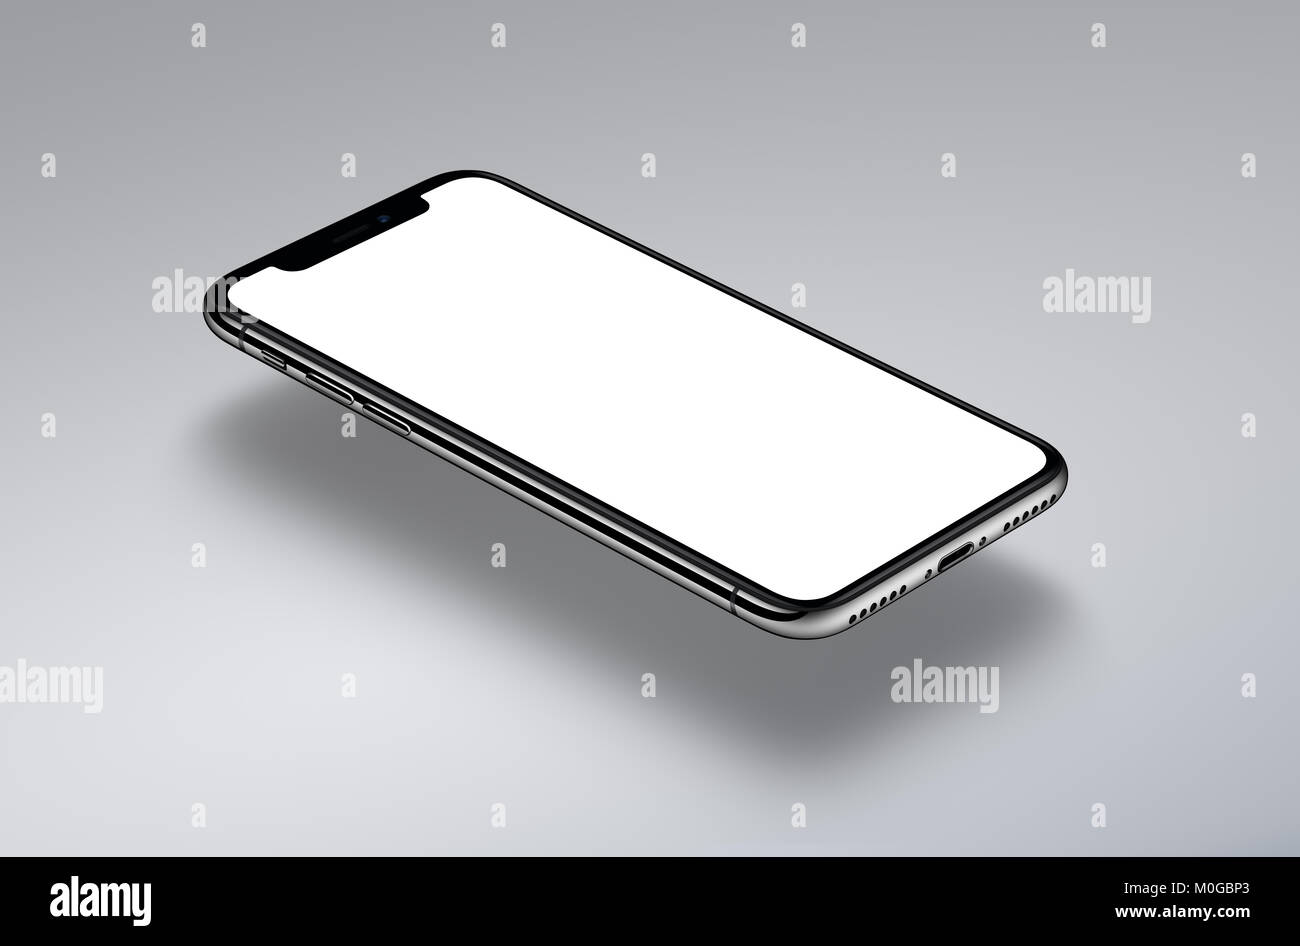 Ähnlich wie das iPhone X perspektivische Ansicht Isometrische smartphone Mockup schwebt über einer grauen Fläche. Neue rahmenlose Smartphone mockup mit weißer Bildschirm. Stockfoto